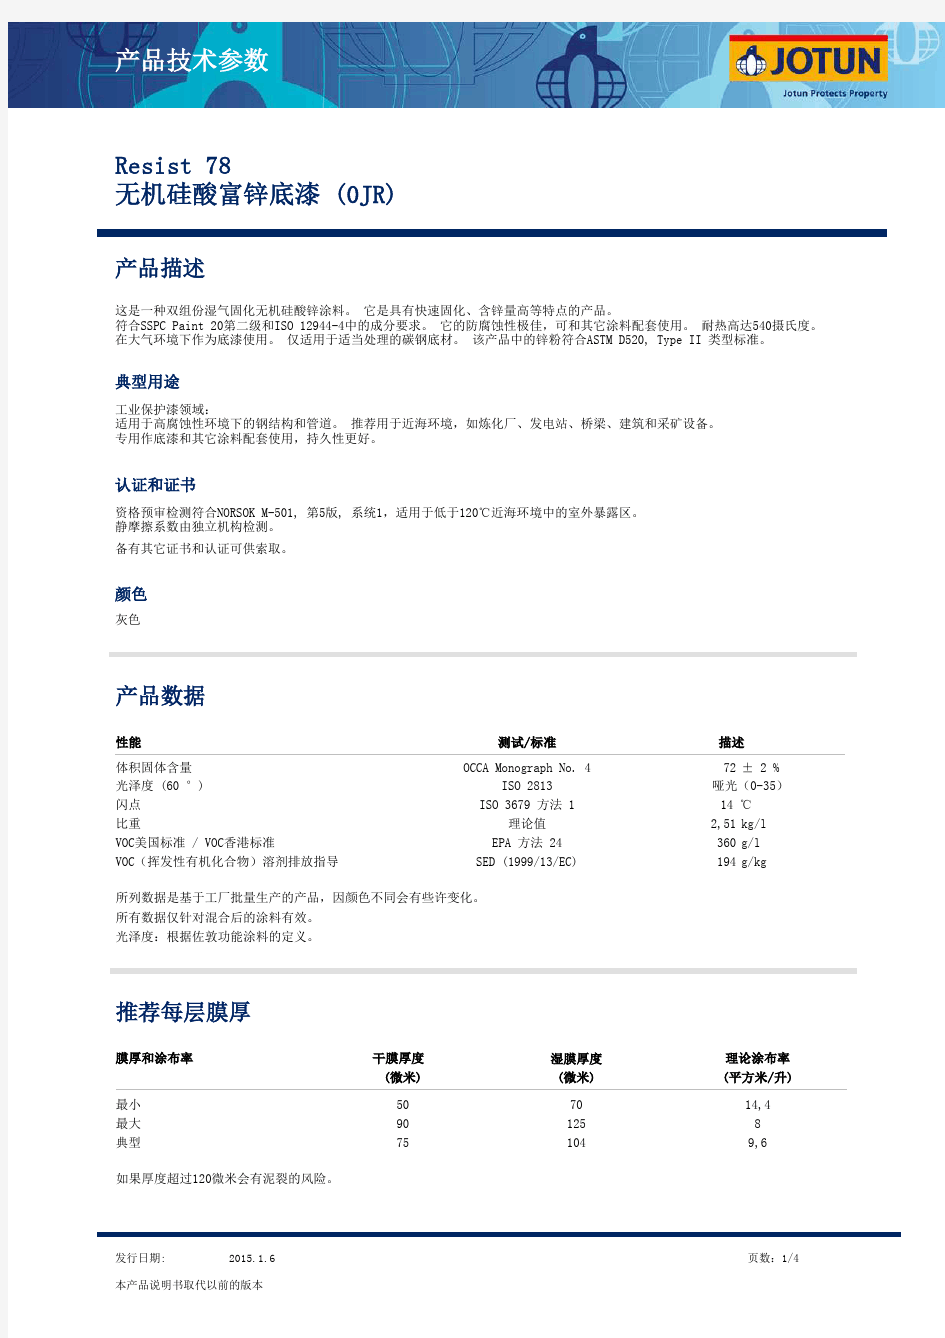 佐敦工业漆 Resist 78 无机硅酸富锌底漆(OJR) 2015年最新版